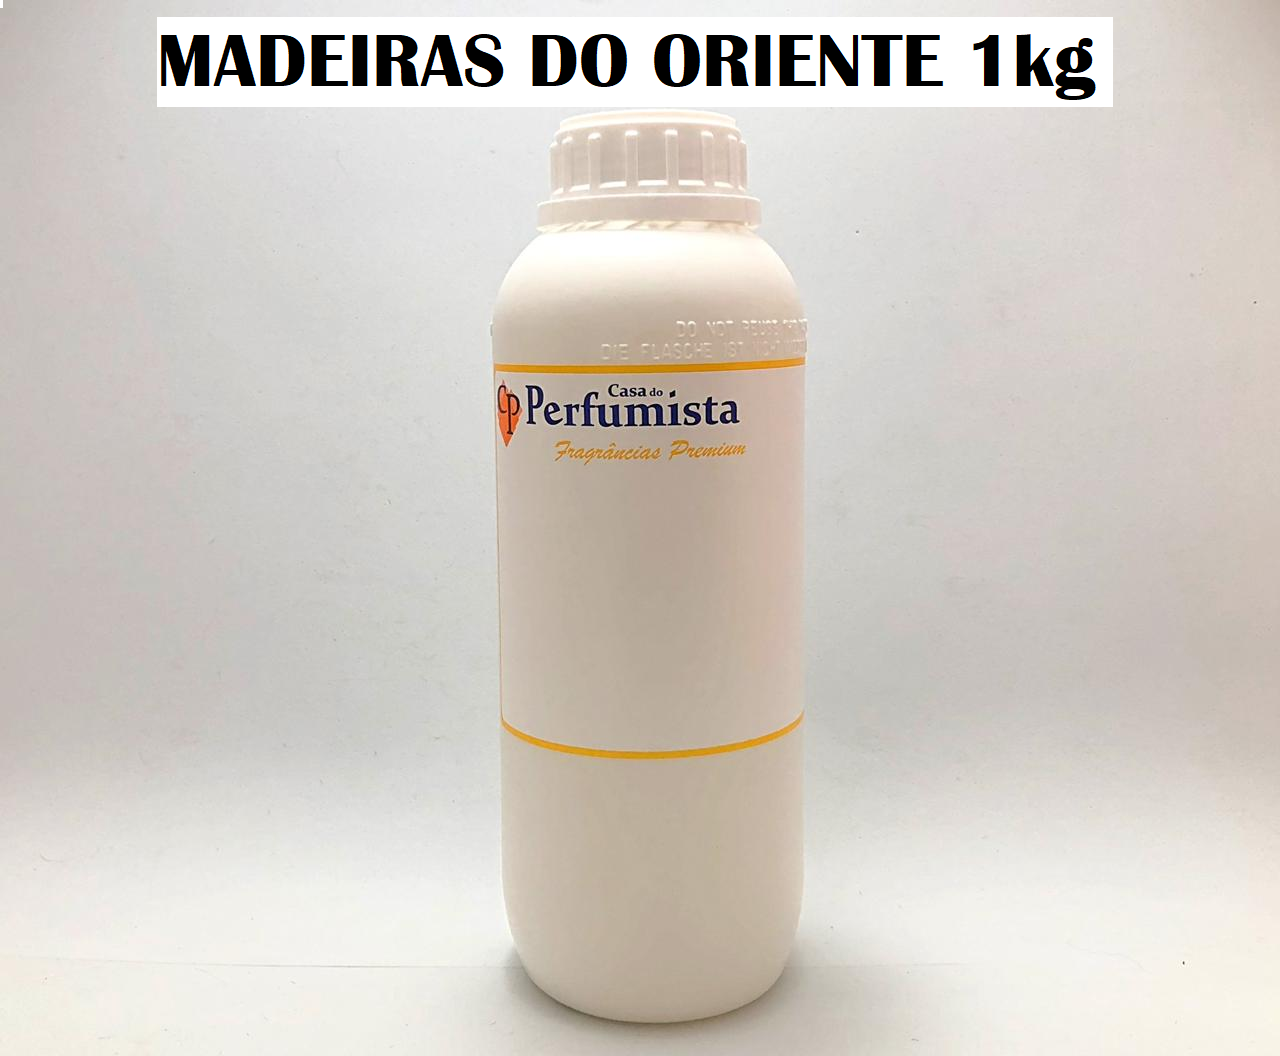 MADEIRAS DO ORIENTE - 1kg